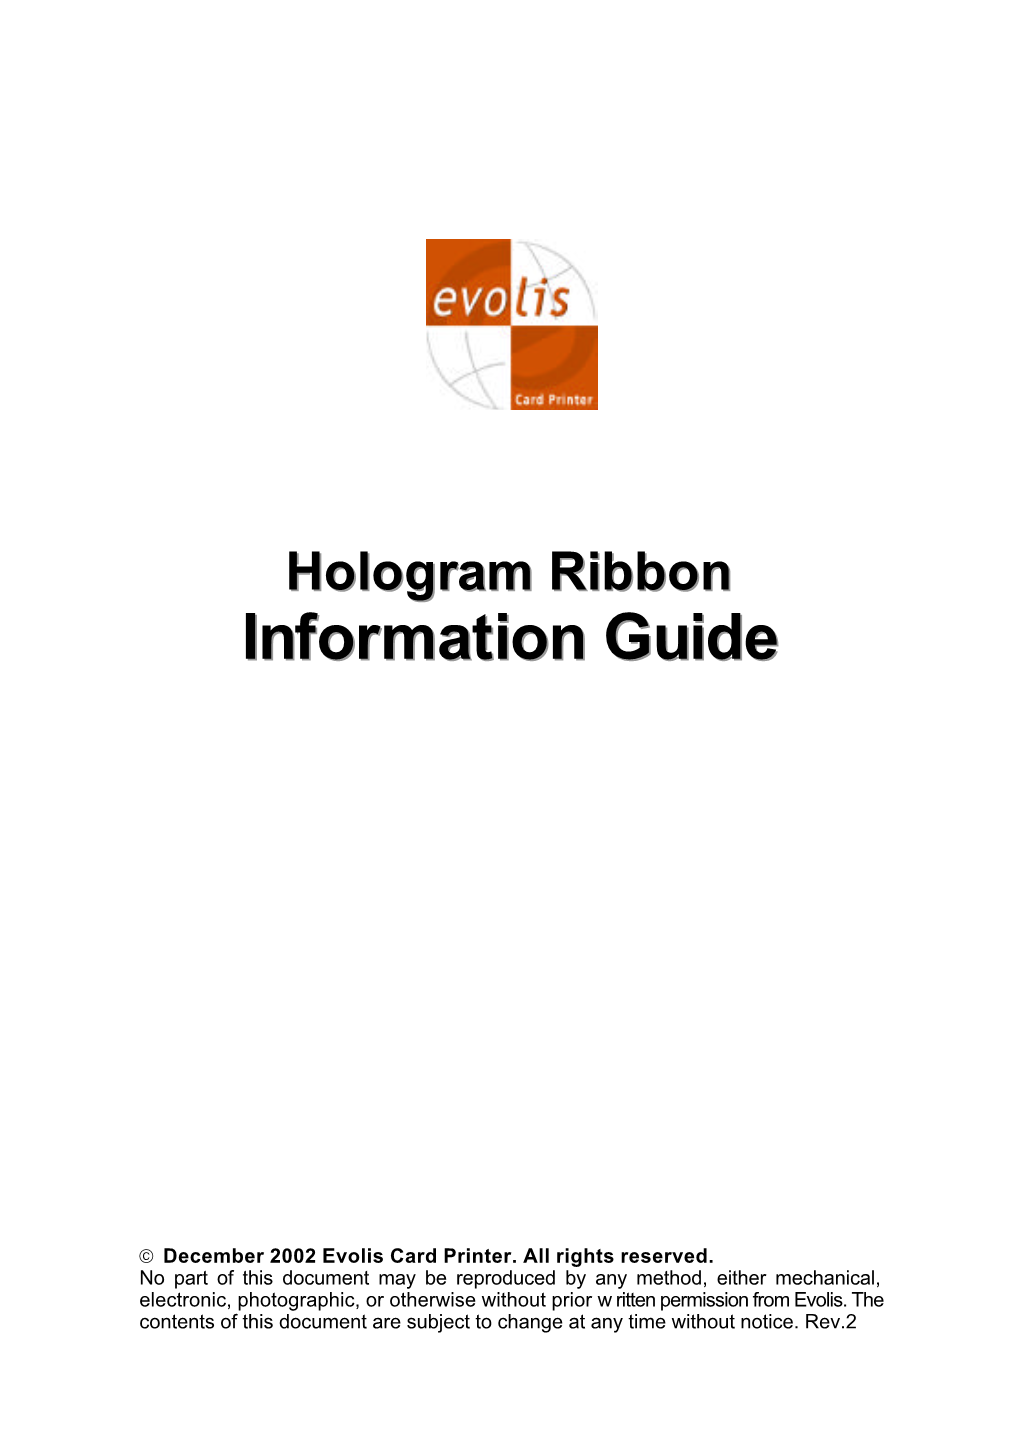 The Evolis Hologram Ribbon